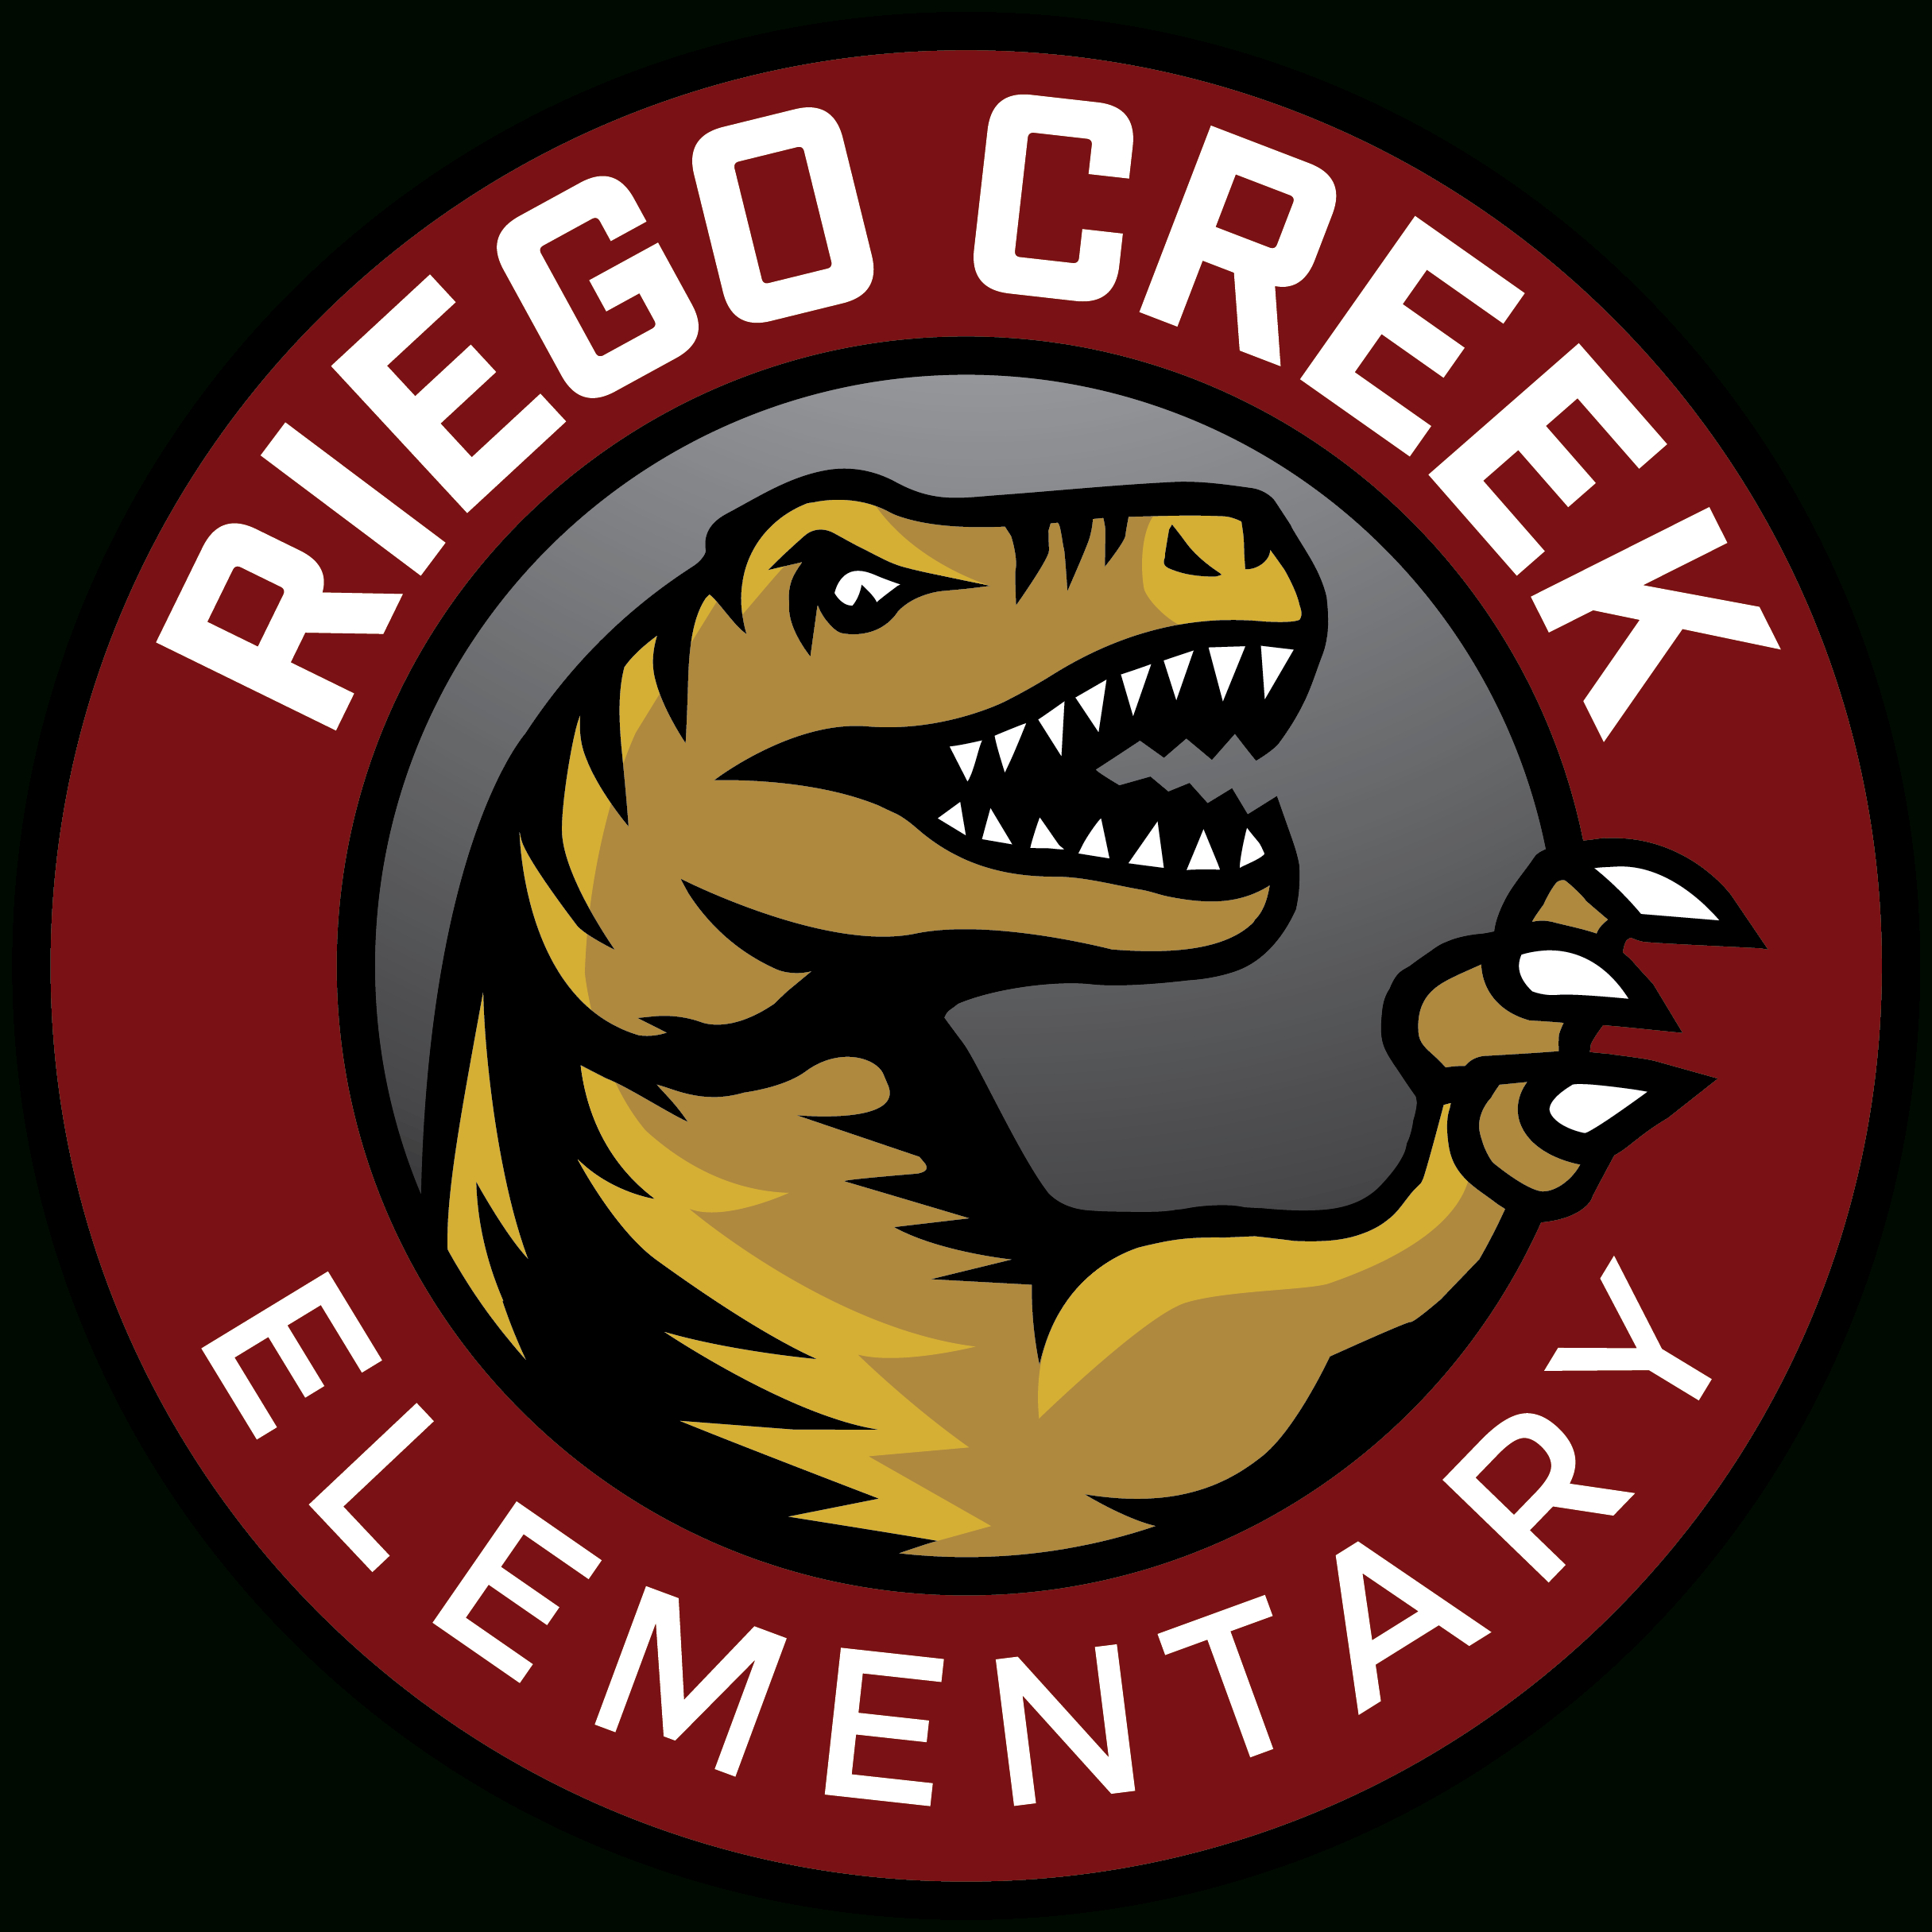 Meet Riego Creek&#039;S Principal, Manny Villalpando - Riego